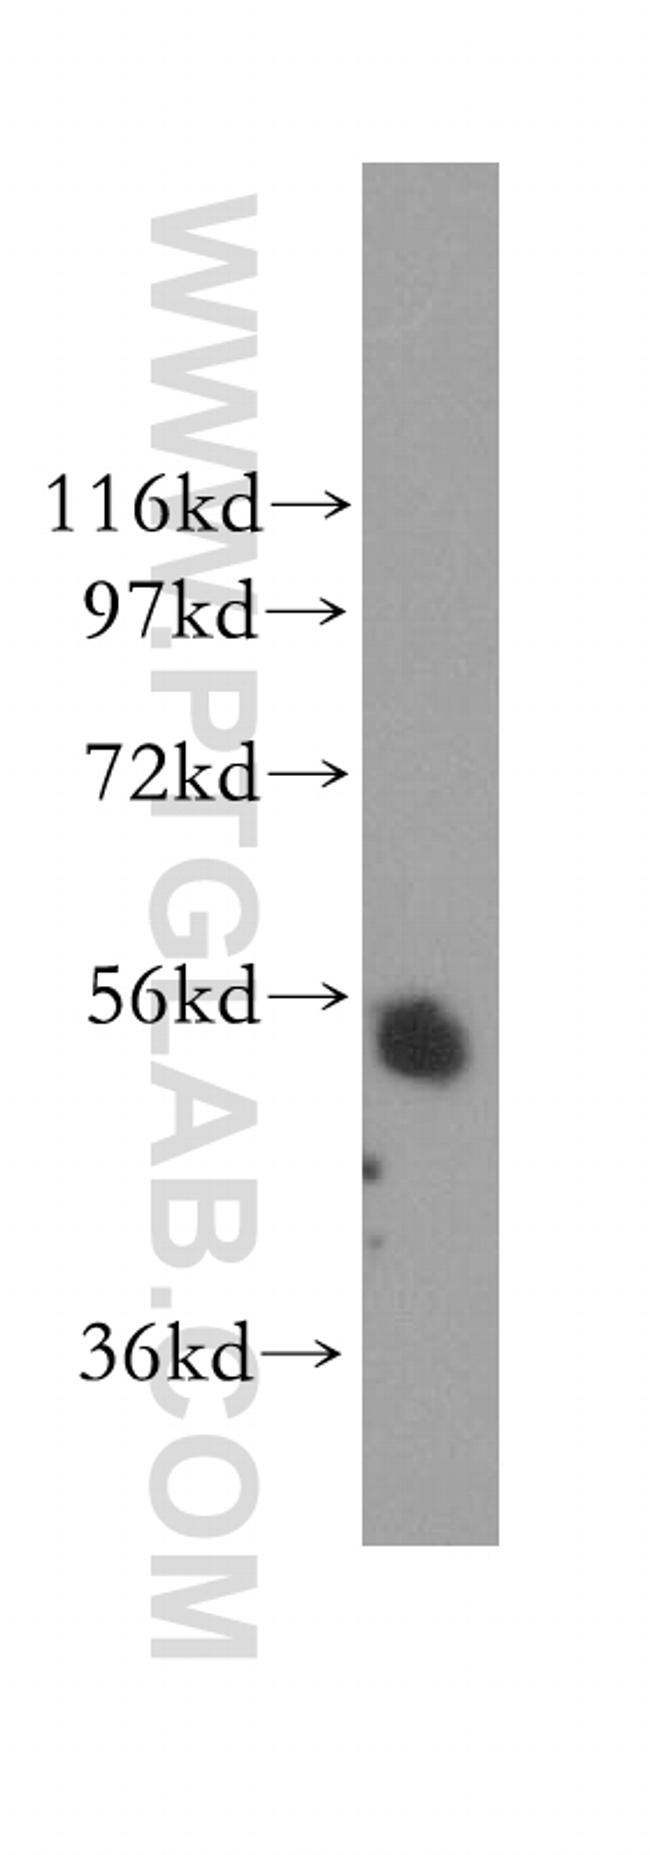 TADA2L Antibody in Western Blot (WB)